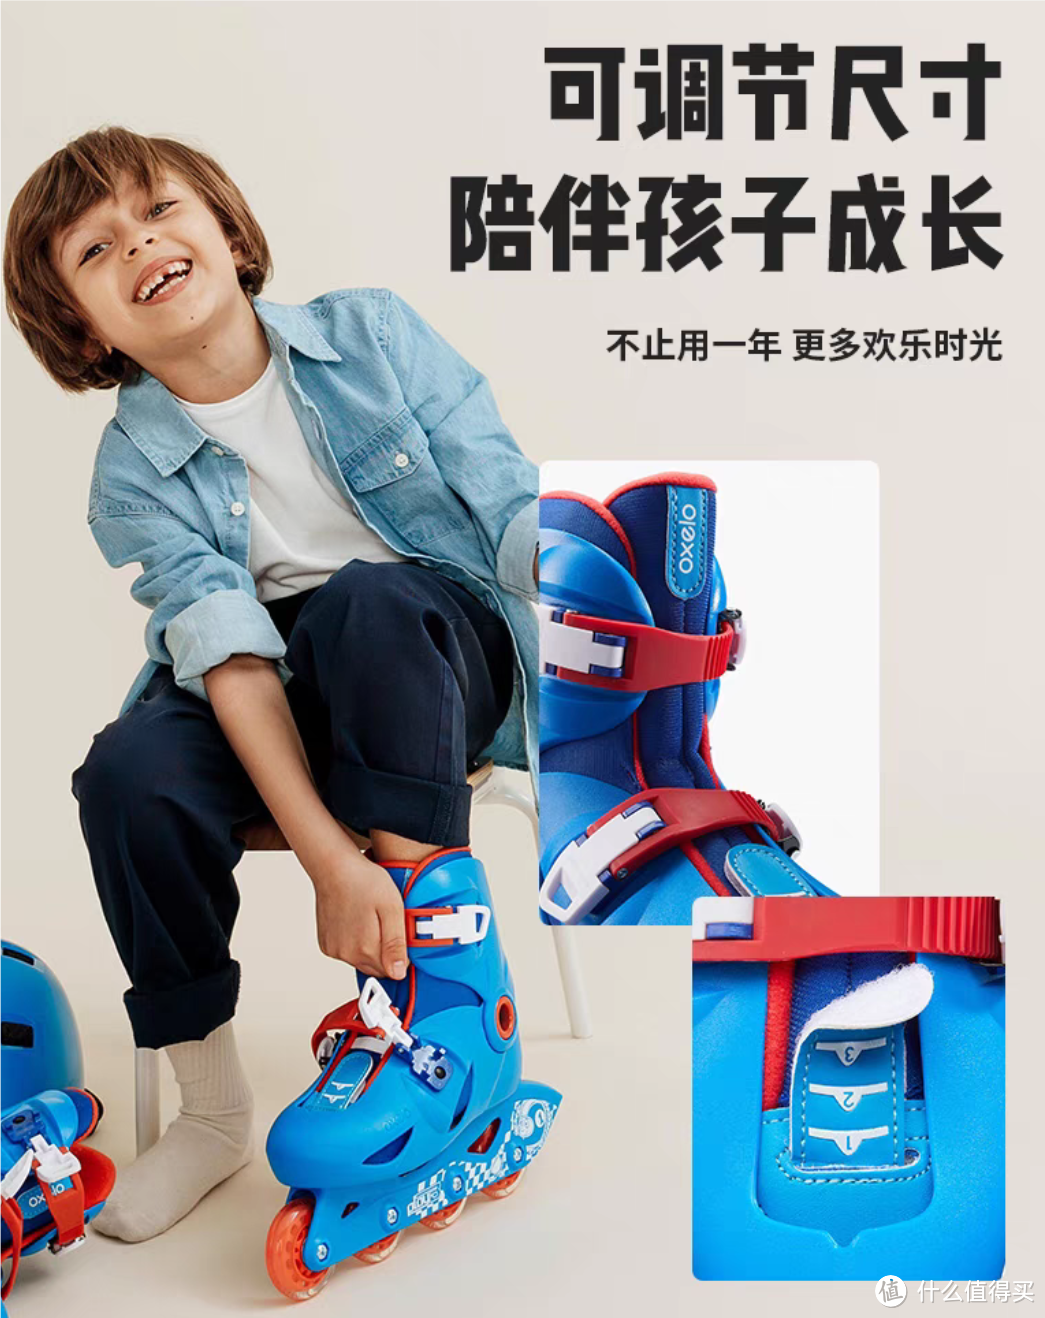 质量好价格实惠的迪卡侬儿童轮滑鞋IVS3